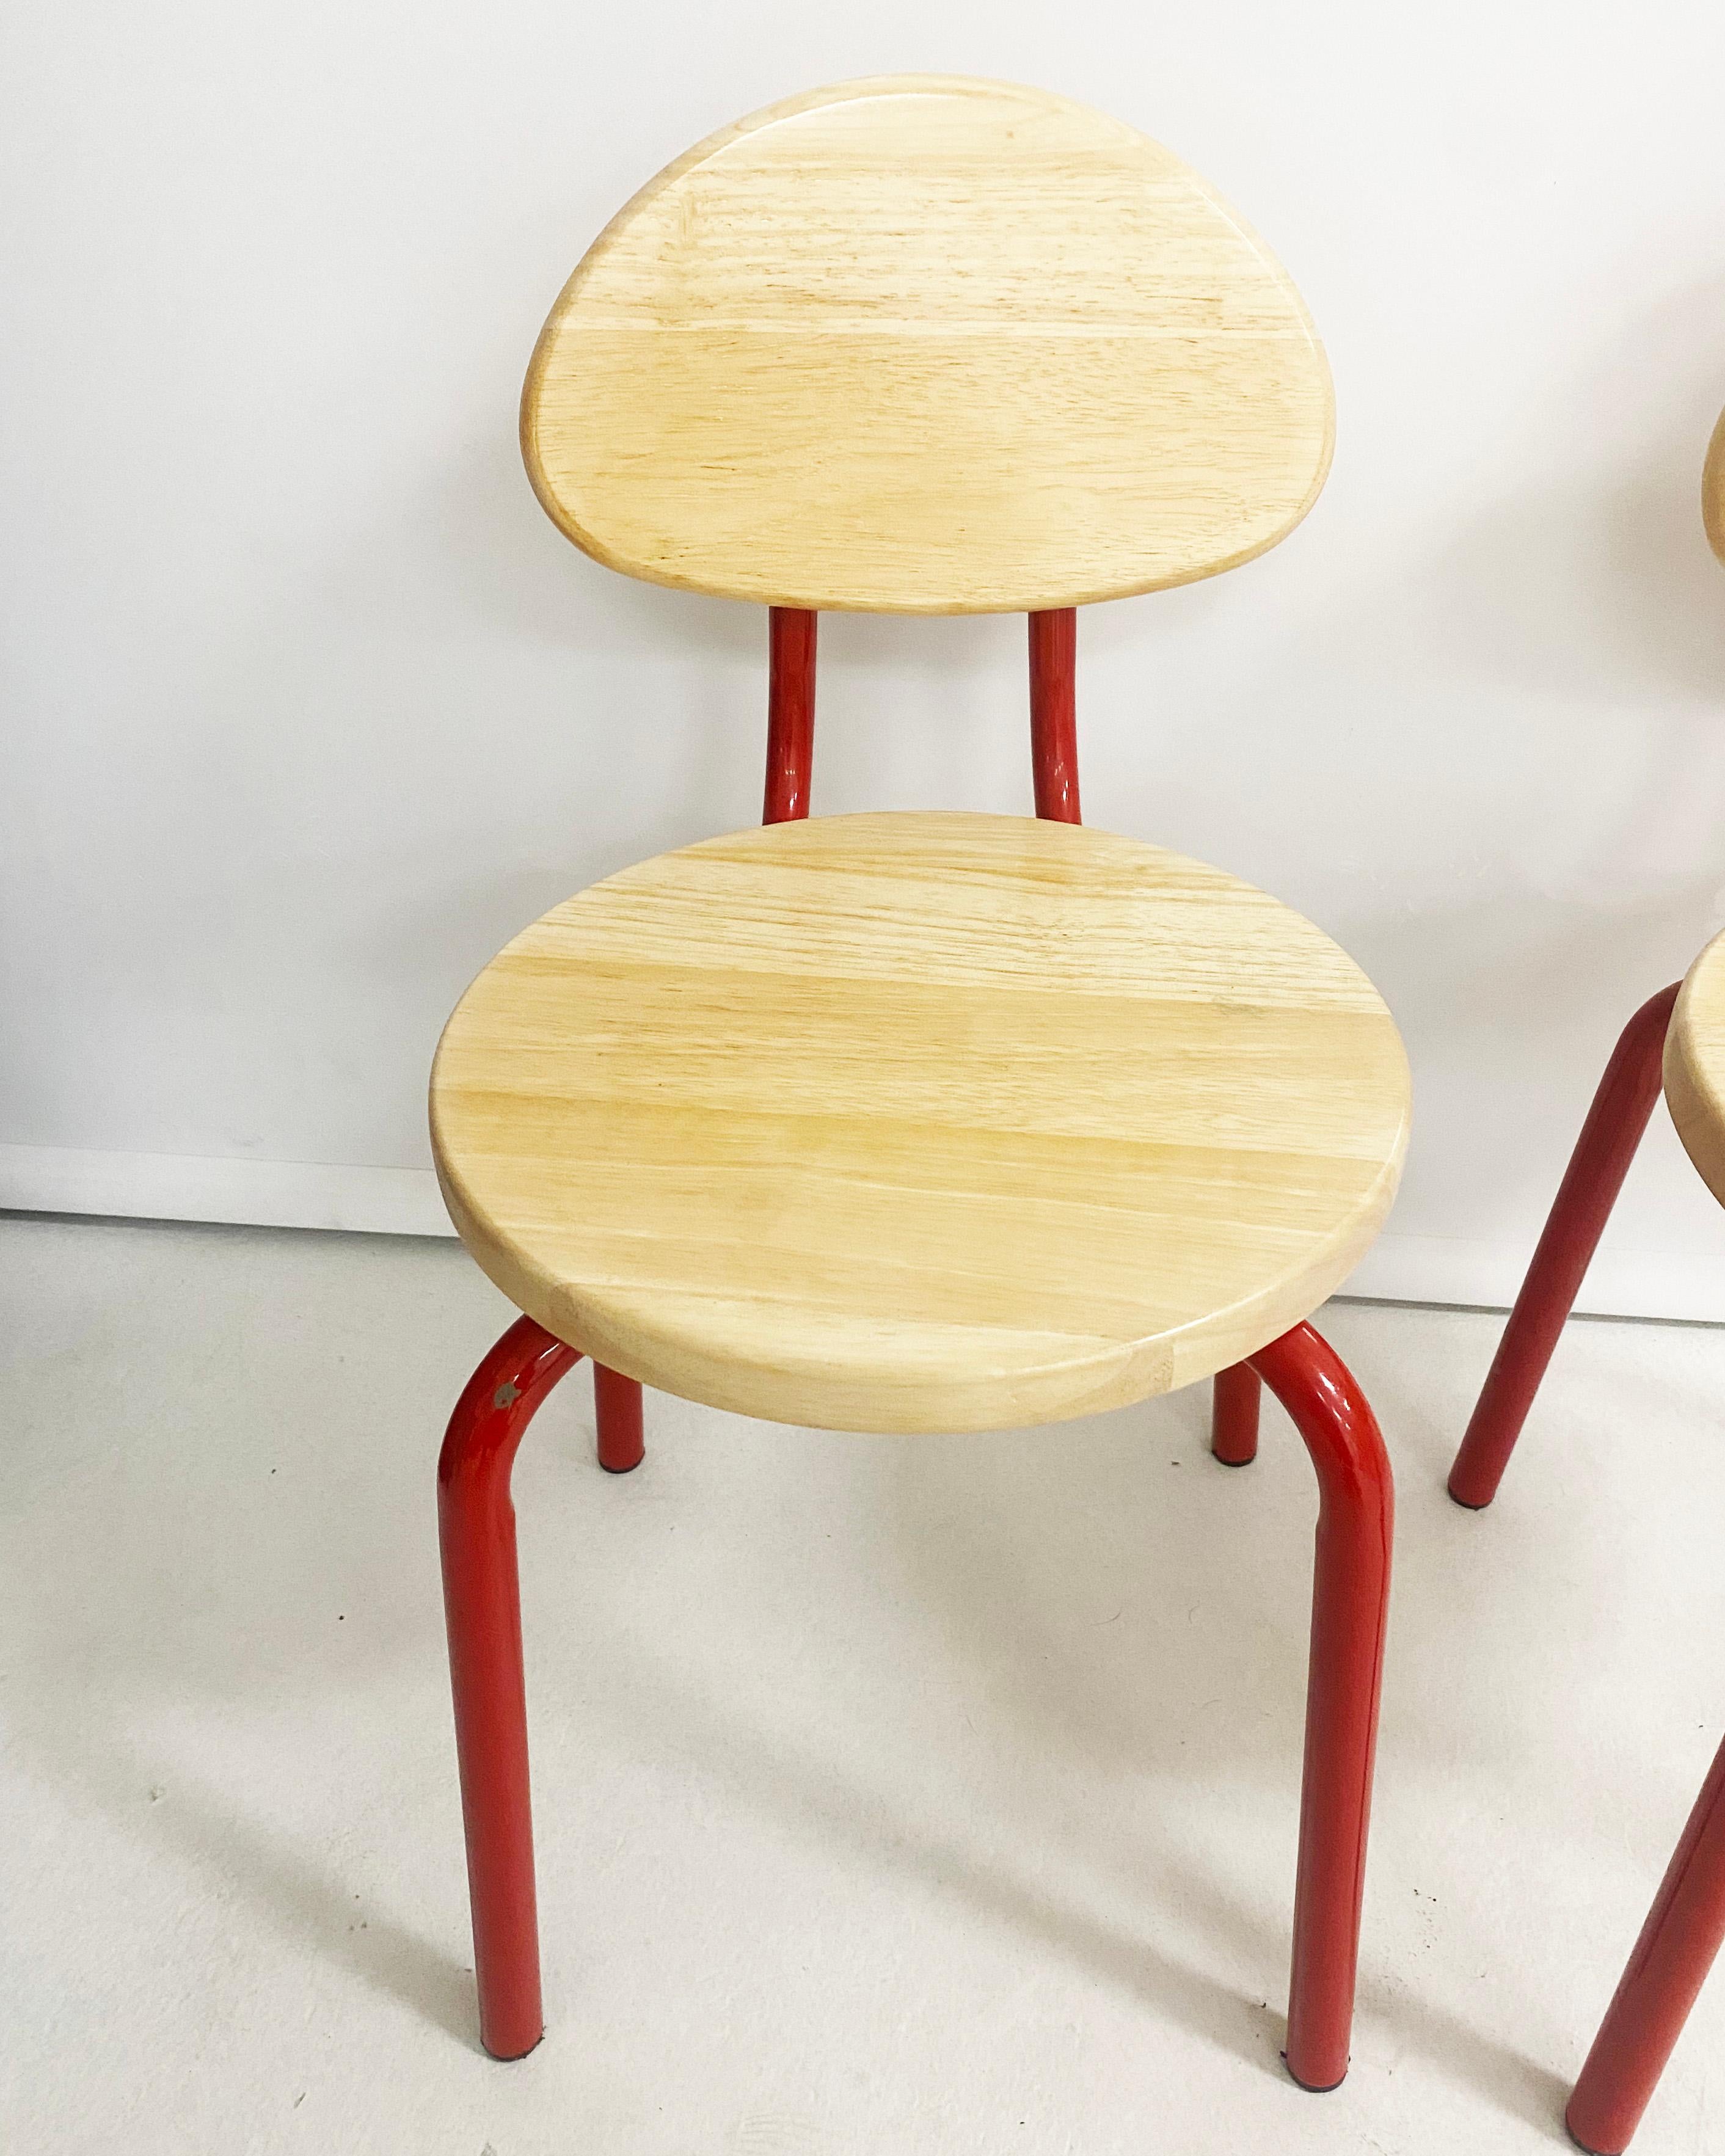 Stühle aus Holz und rotem Metall im Memphis Milano-Stil der 1980er Jahre für kleine Kinder von 2 bis 4 Jahren. Beide haben eine erhebliche Menge an Farbe und Verschleiß an Holz. Zwei verfügbar und als Paar verkauft. 